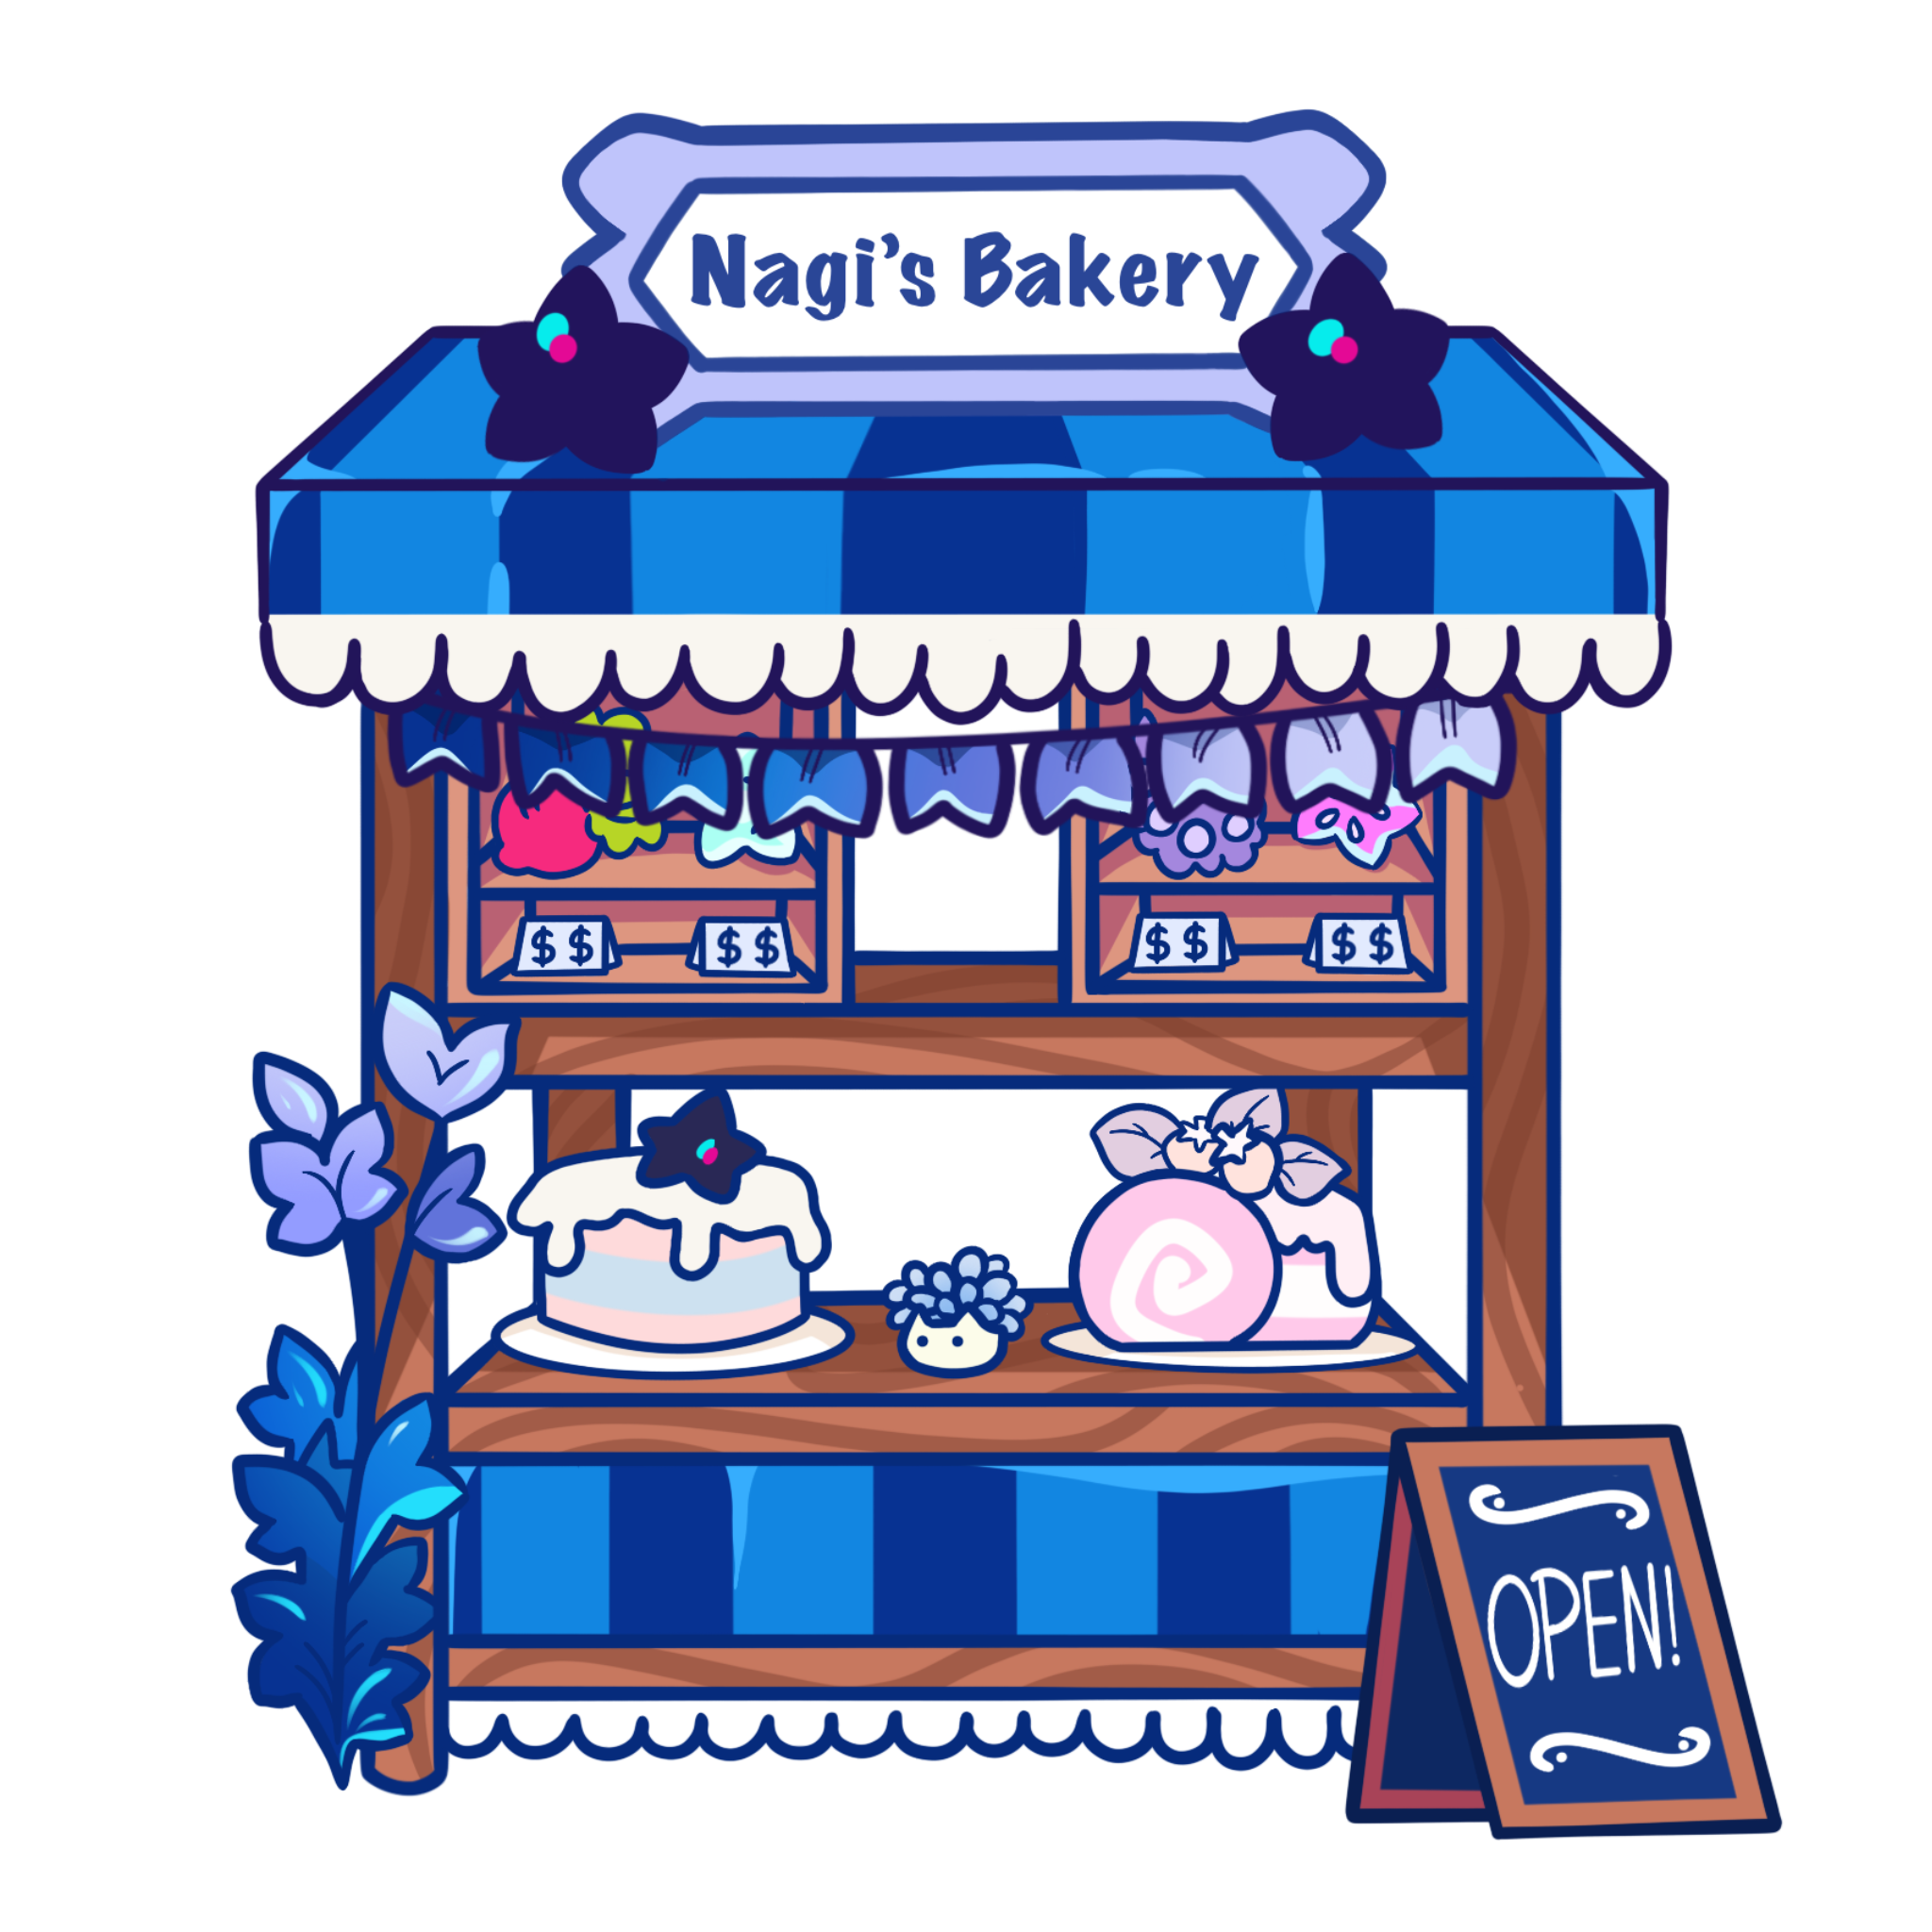 Nagi’s Bakery